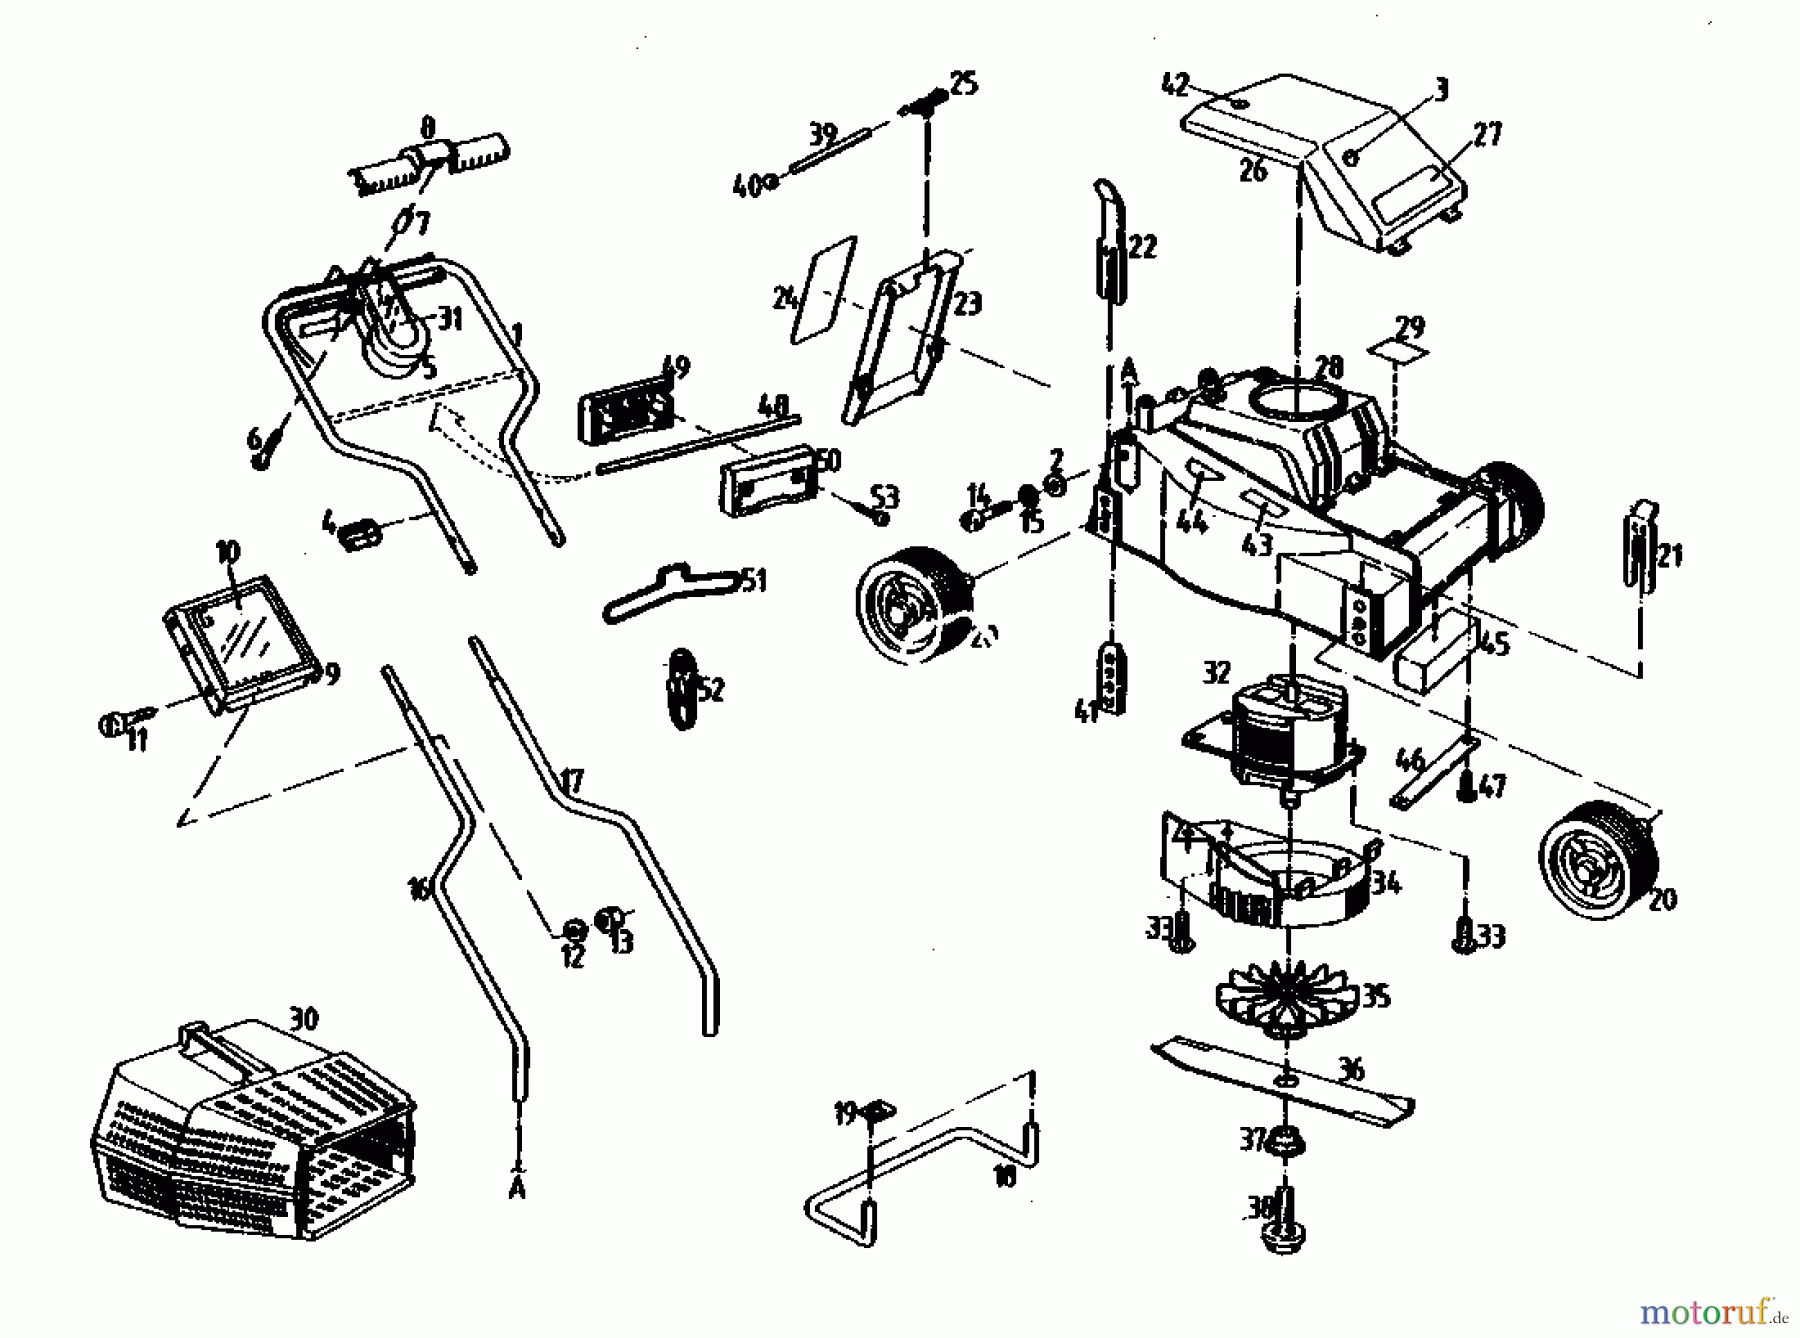  Gutbrod Tondeuse électrique HE 32 02845.01  (1989) Machine de base